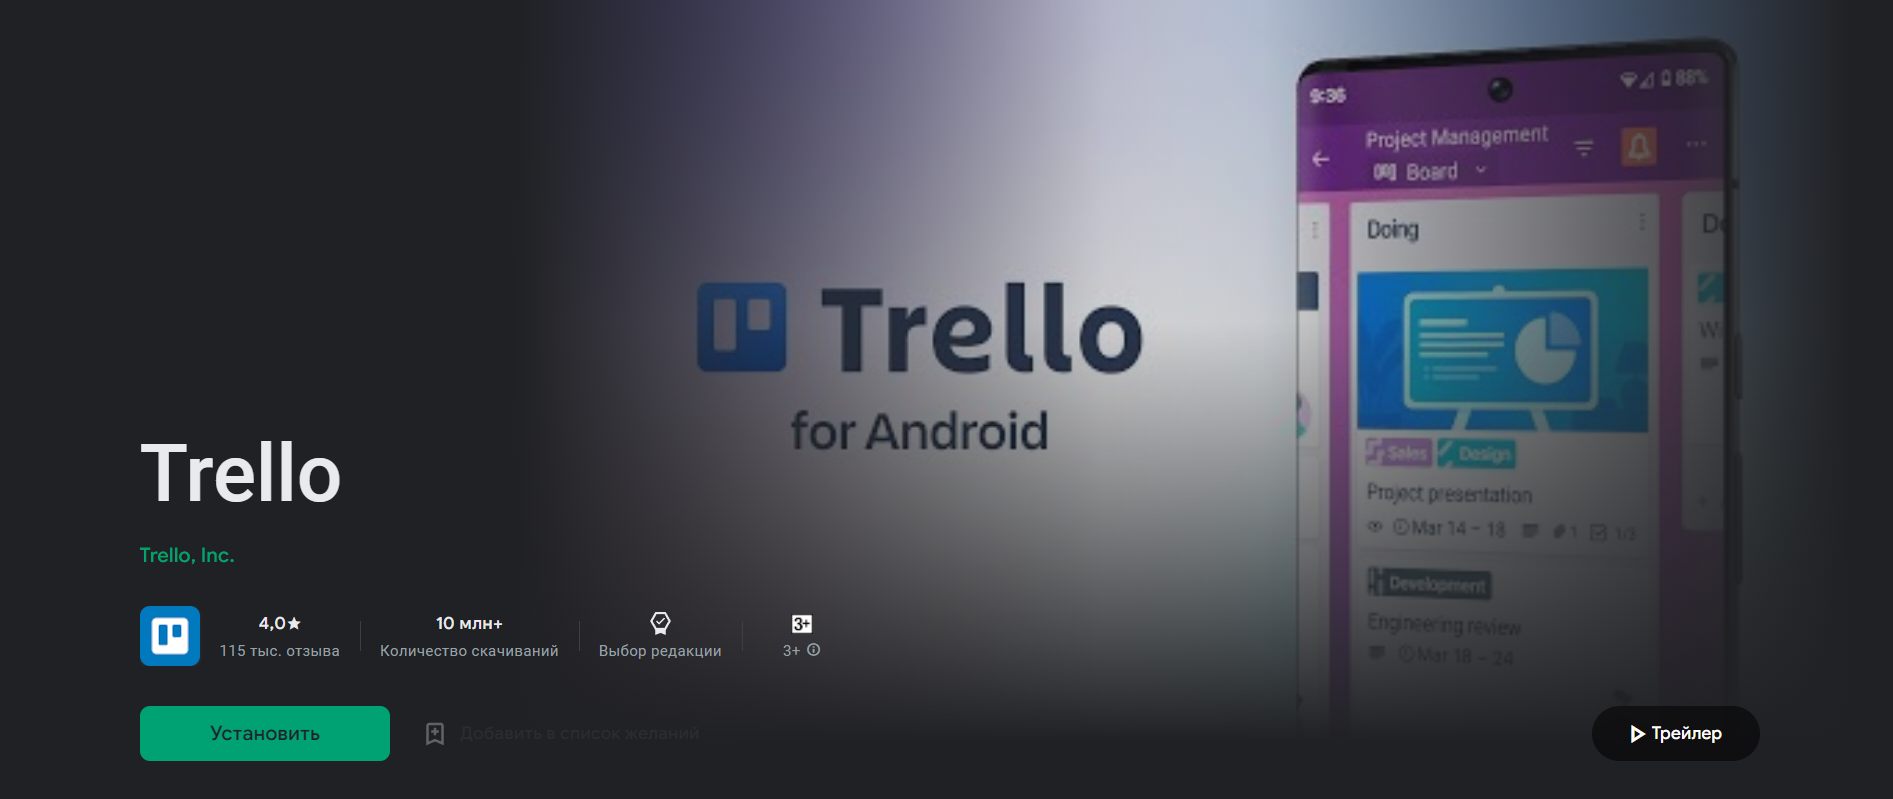 Как скачать и установить программу Trello для Android